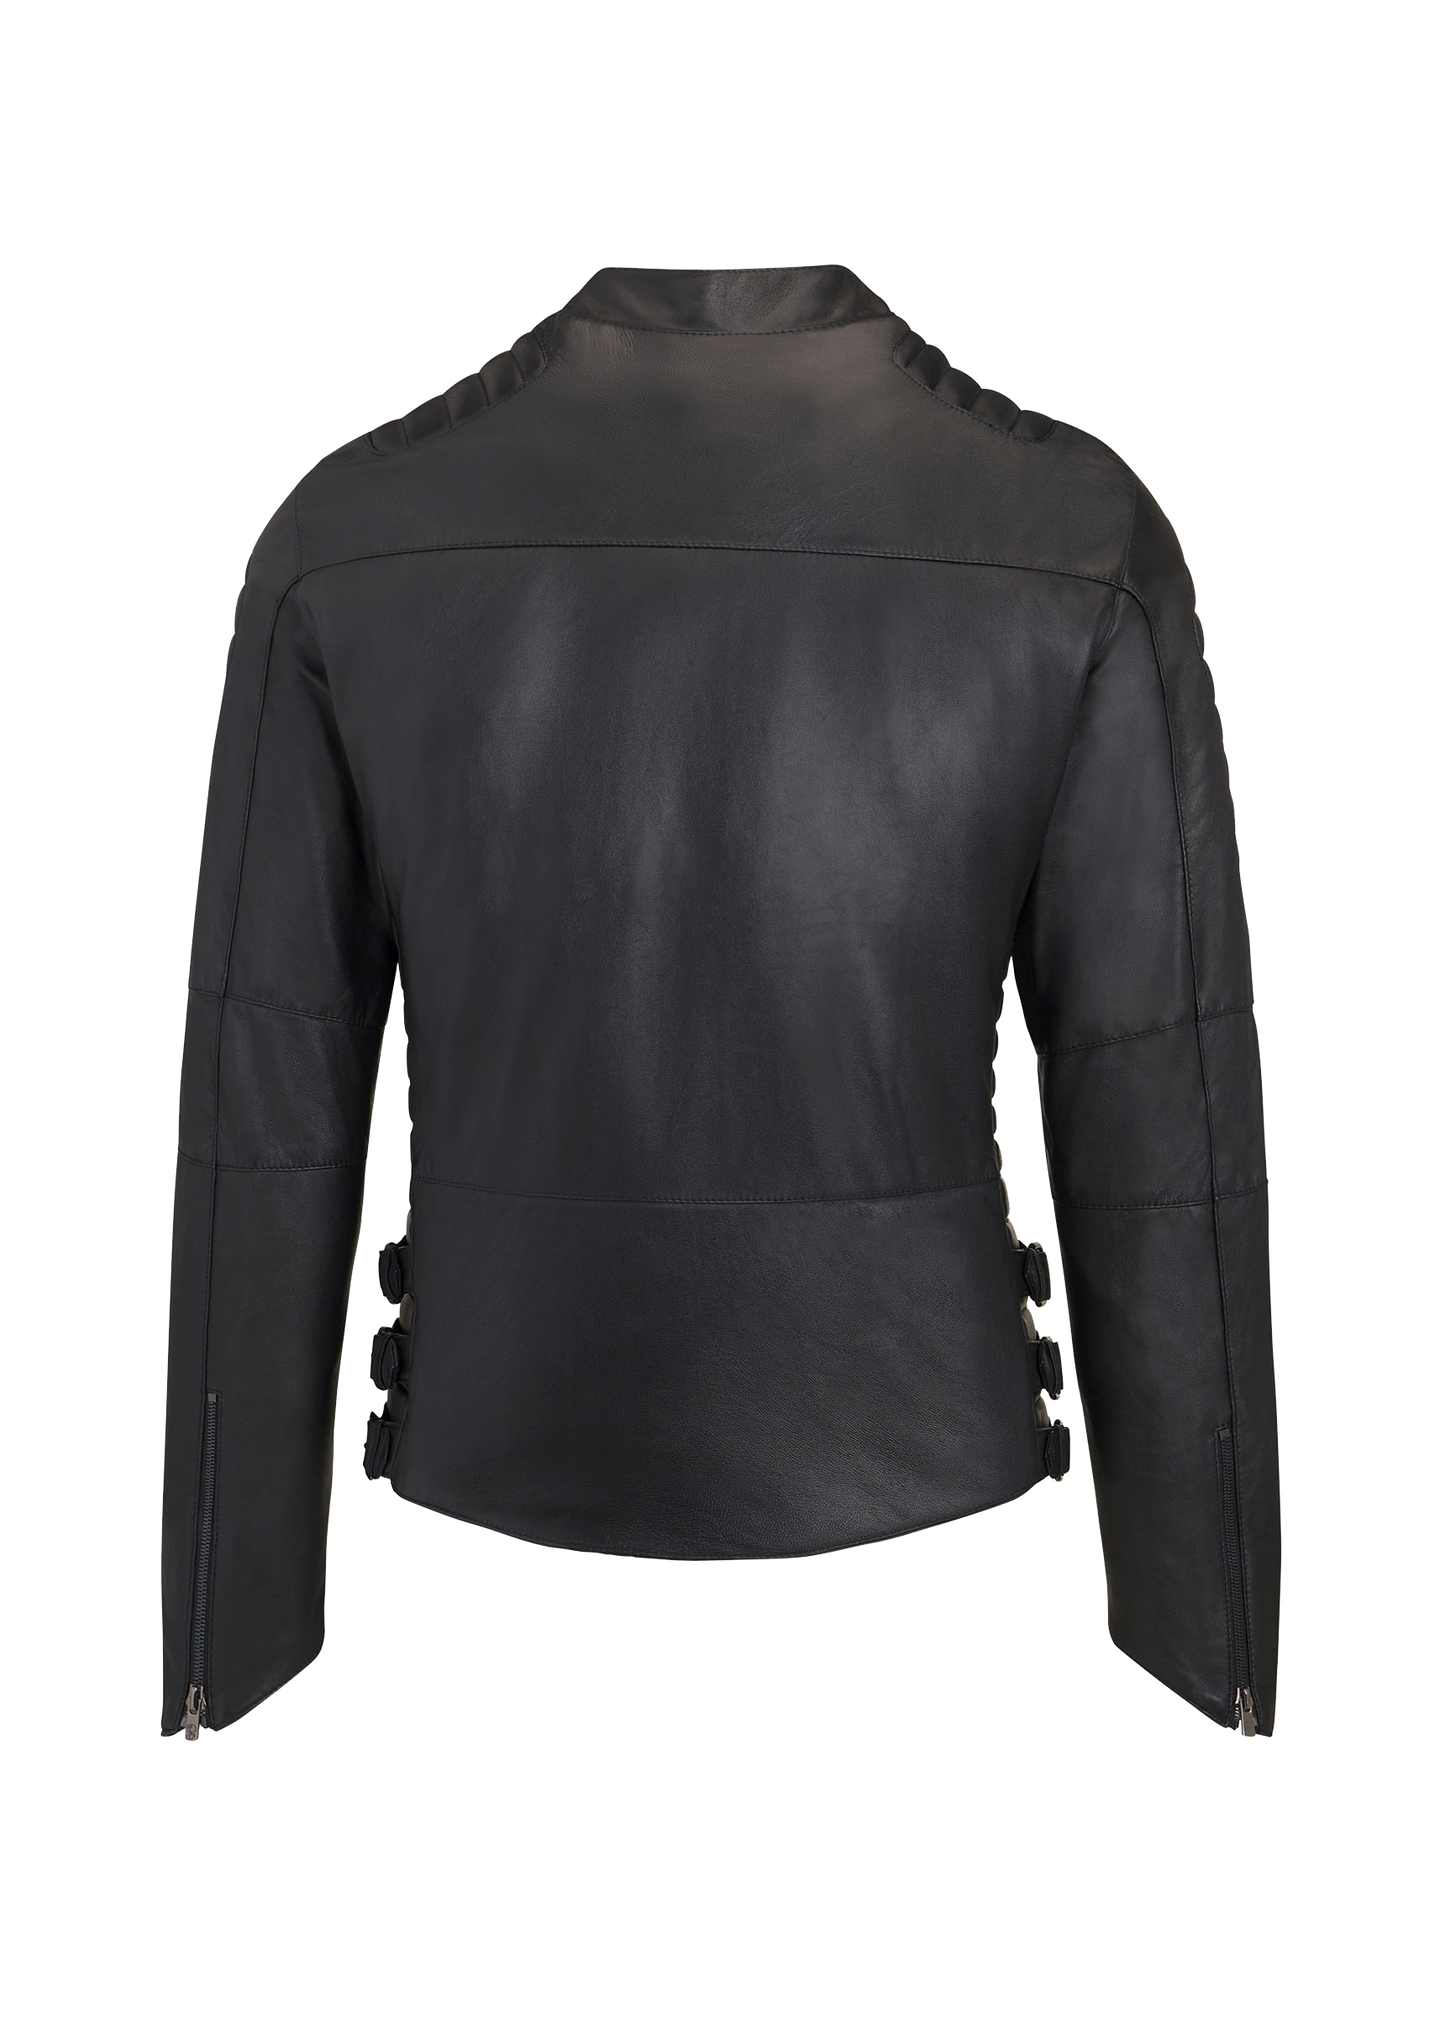 Dulce Bestia™ Rule Breakers Leather Jacket